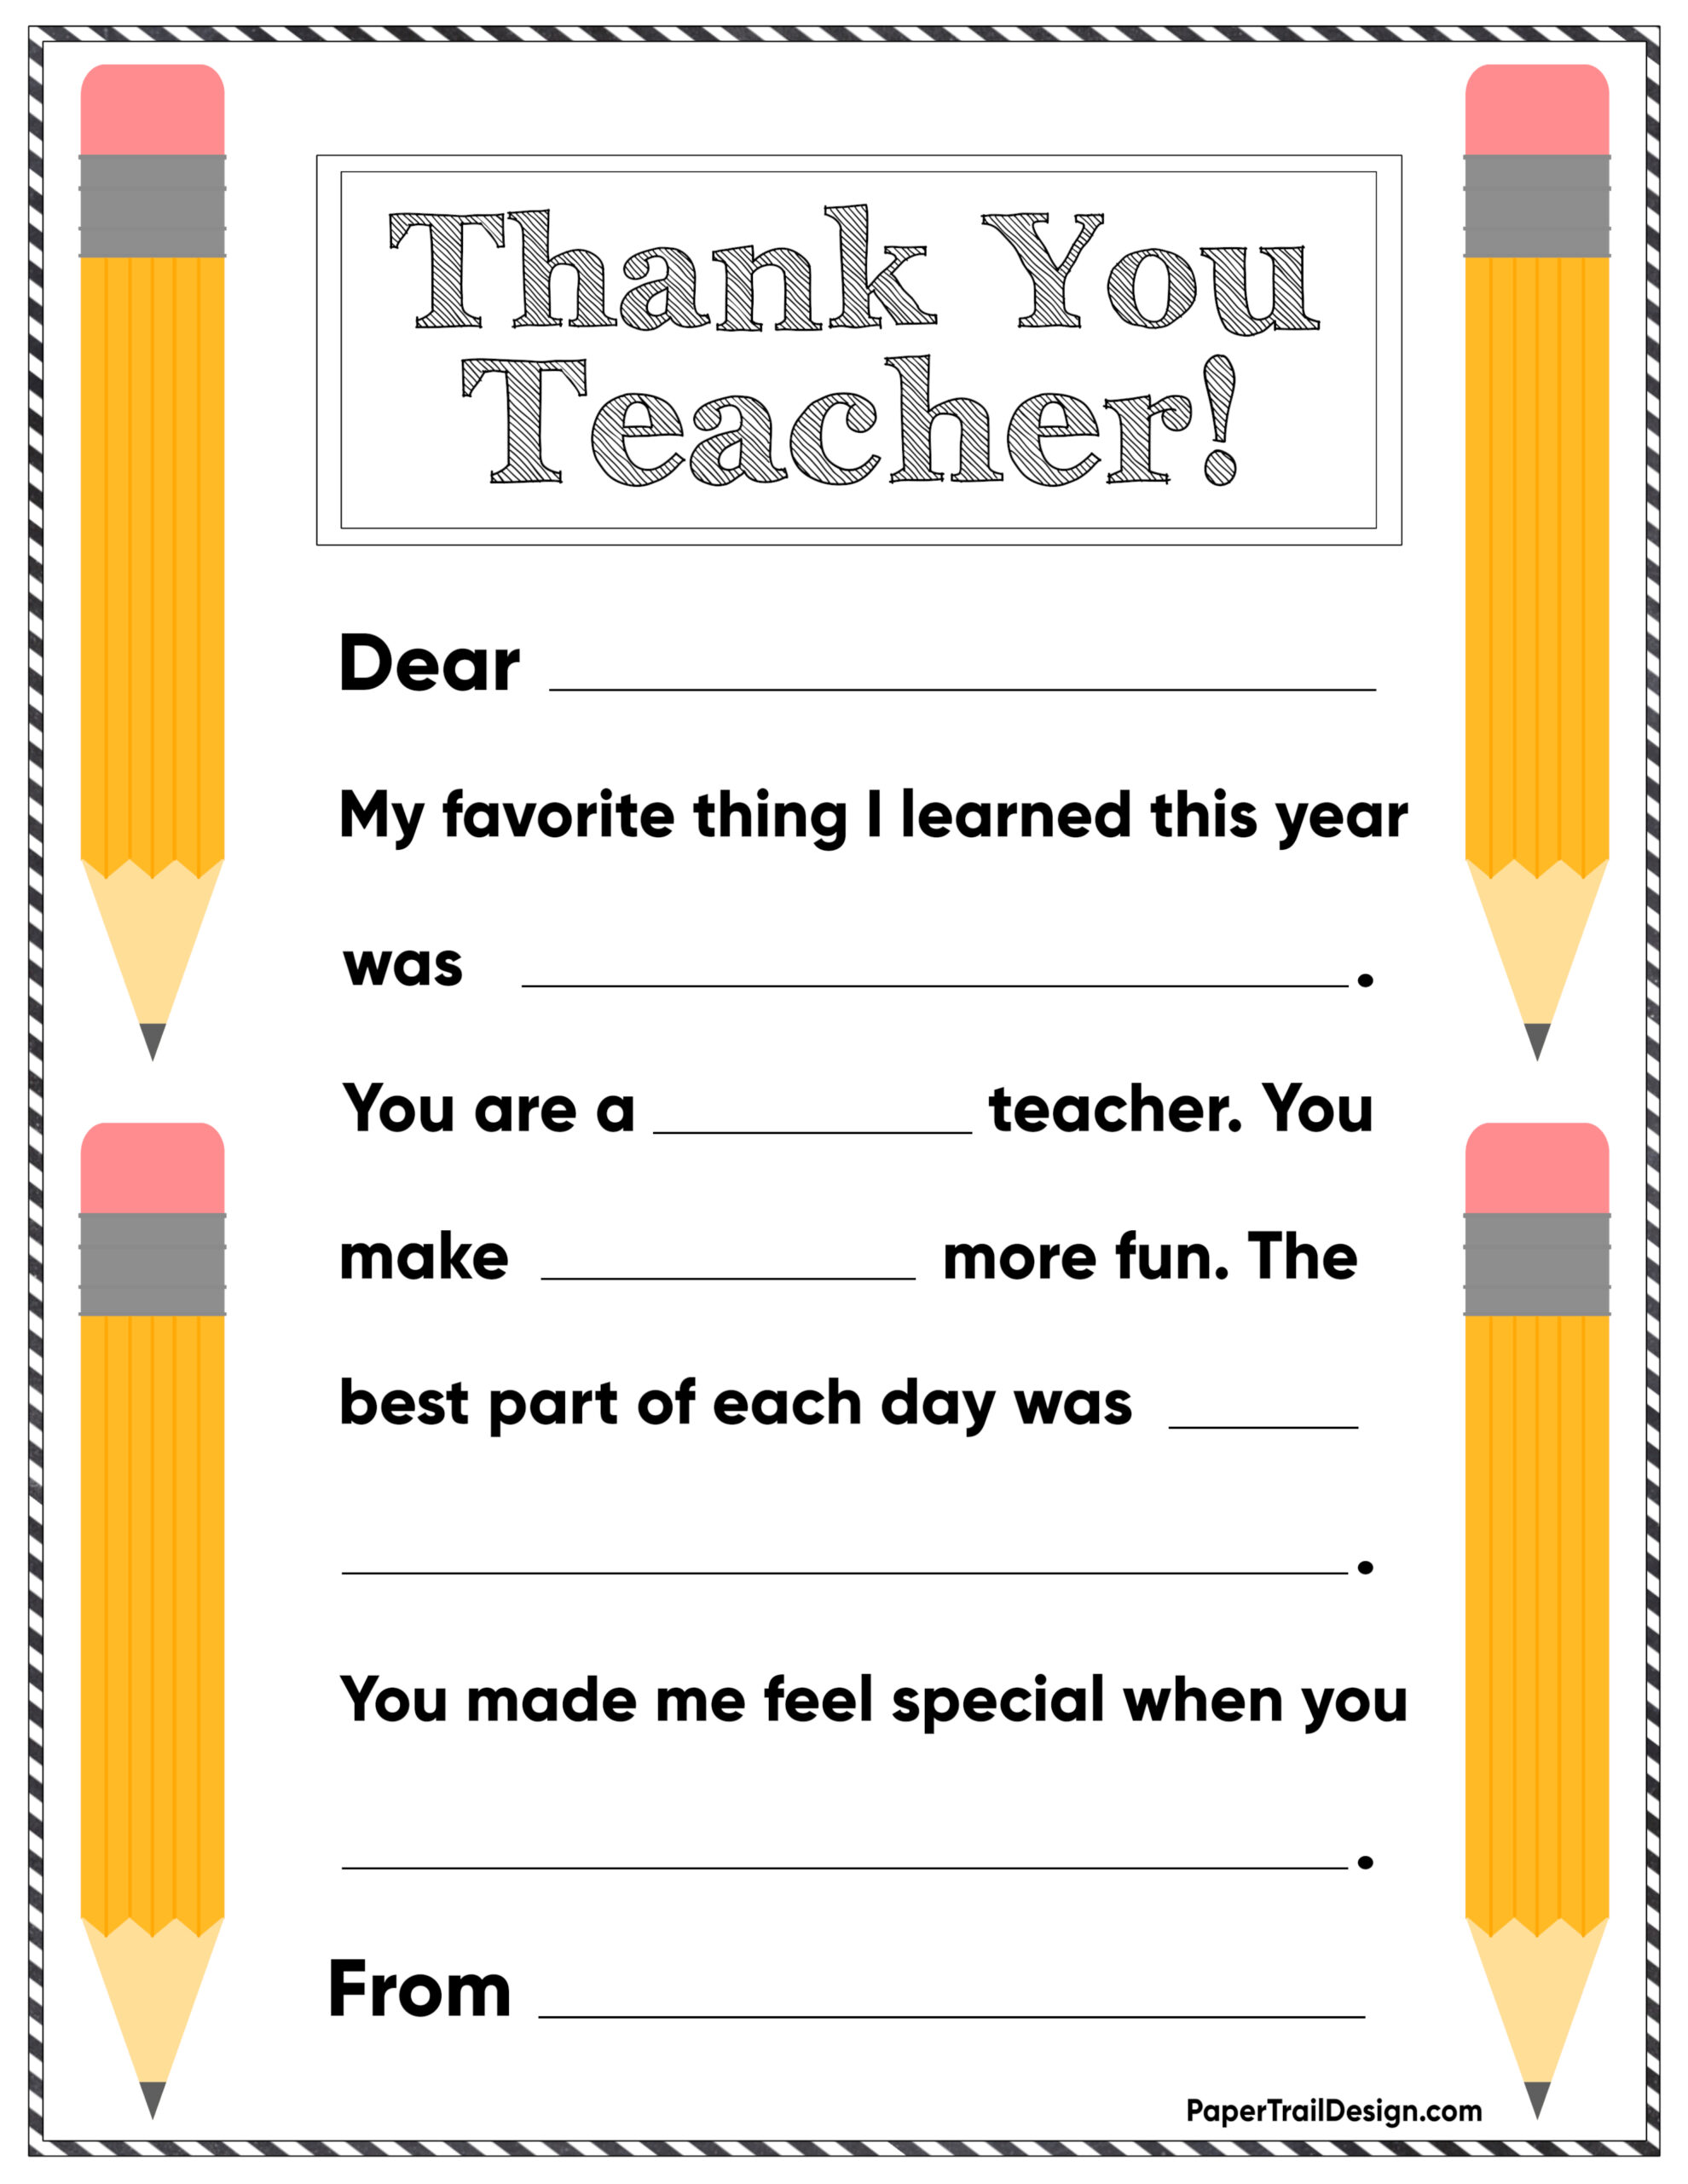 thank-you-teacher-free-printable